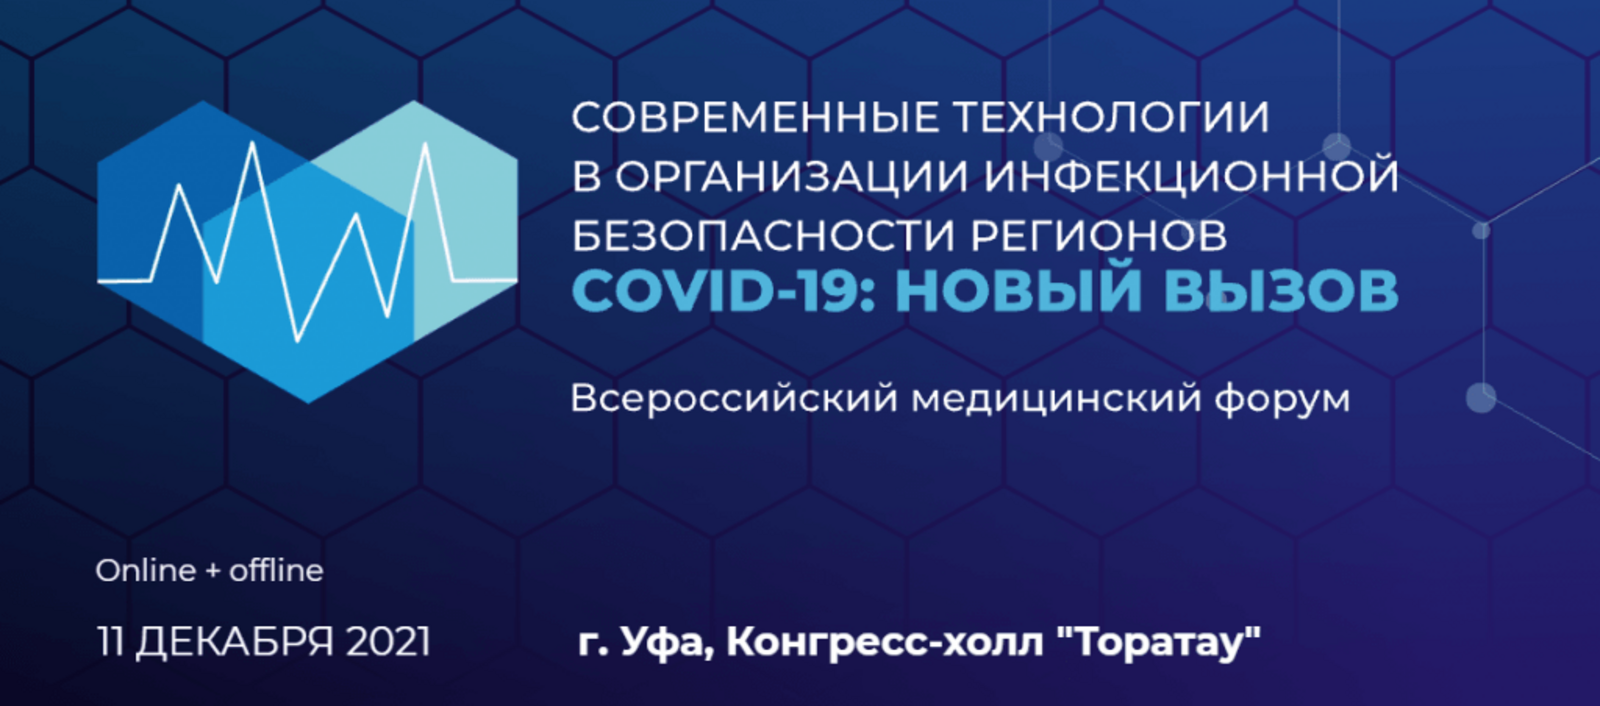 В Уфе медики на Всероссийском форуме обсудят противодействие коронавирусу